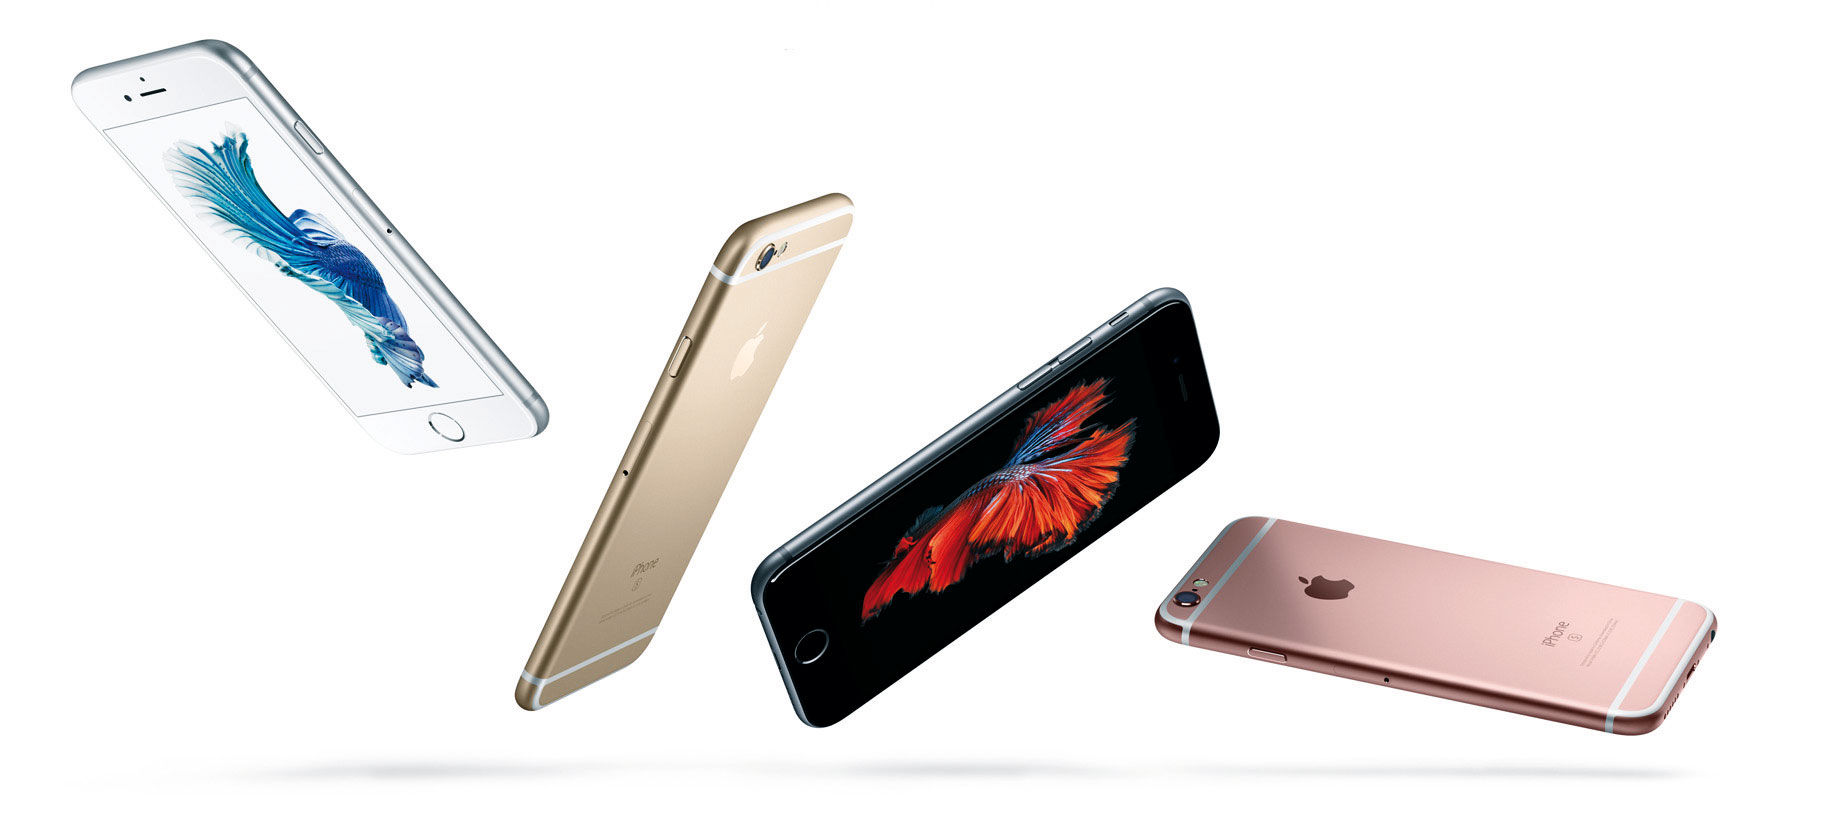 Apple überholt Samsung beim Smartphone-Absatz